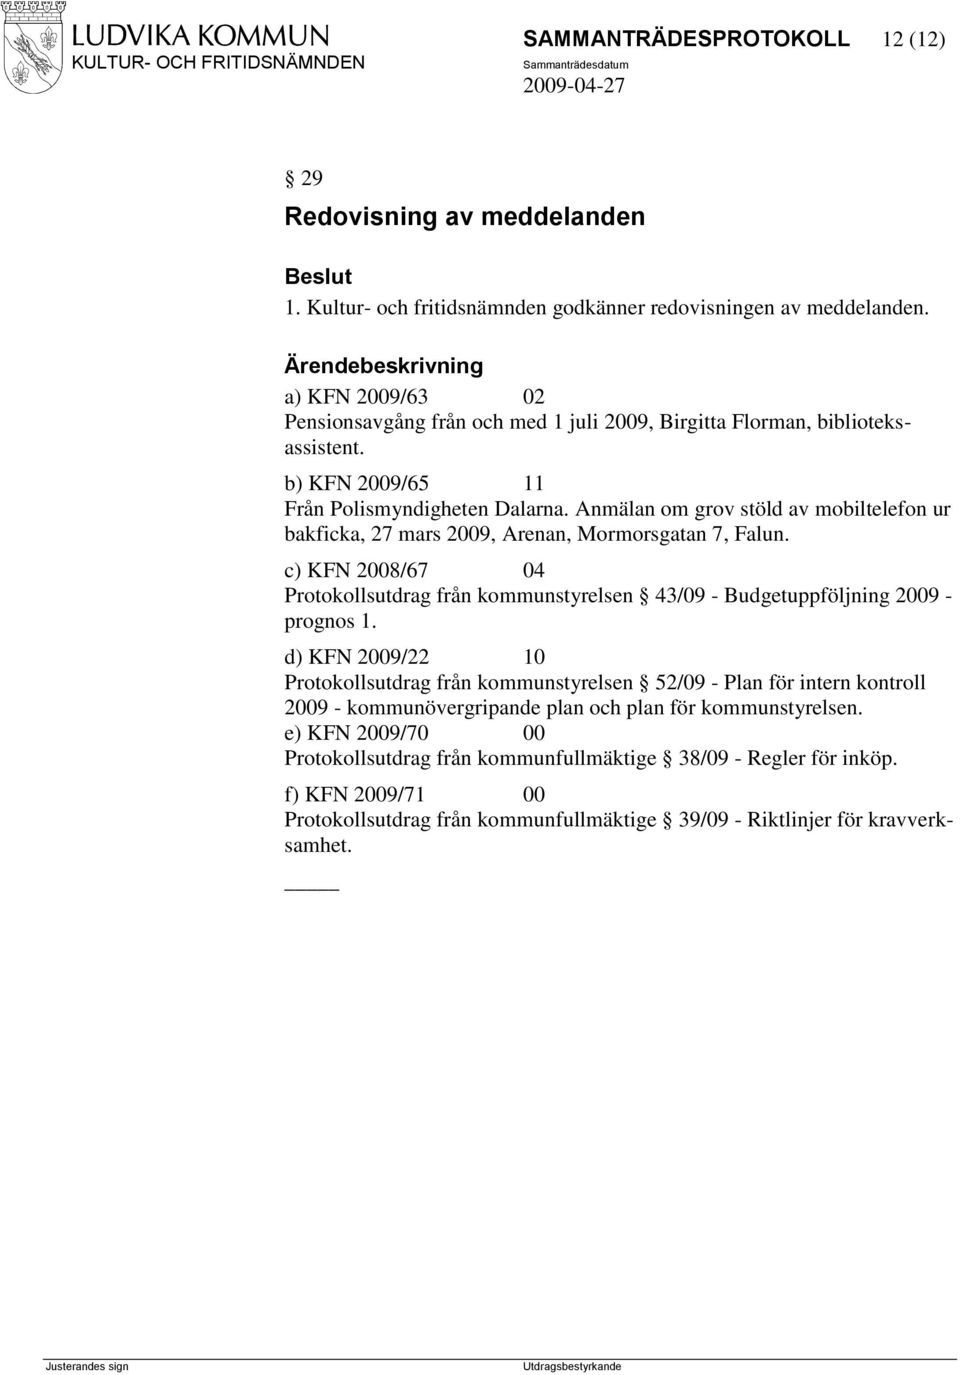 Anmälan om grov stöld av mobiltelefon ur bakficka, 27 mars 2009, Arenan, Mormorsgatan 7, Falun. c) KFN 2008/67 04 Protokollsutdrag från kommunstyrelsen 43/09 - Budgetuppföljning 2009 - prognos 1.